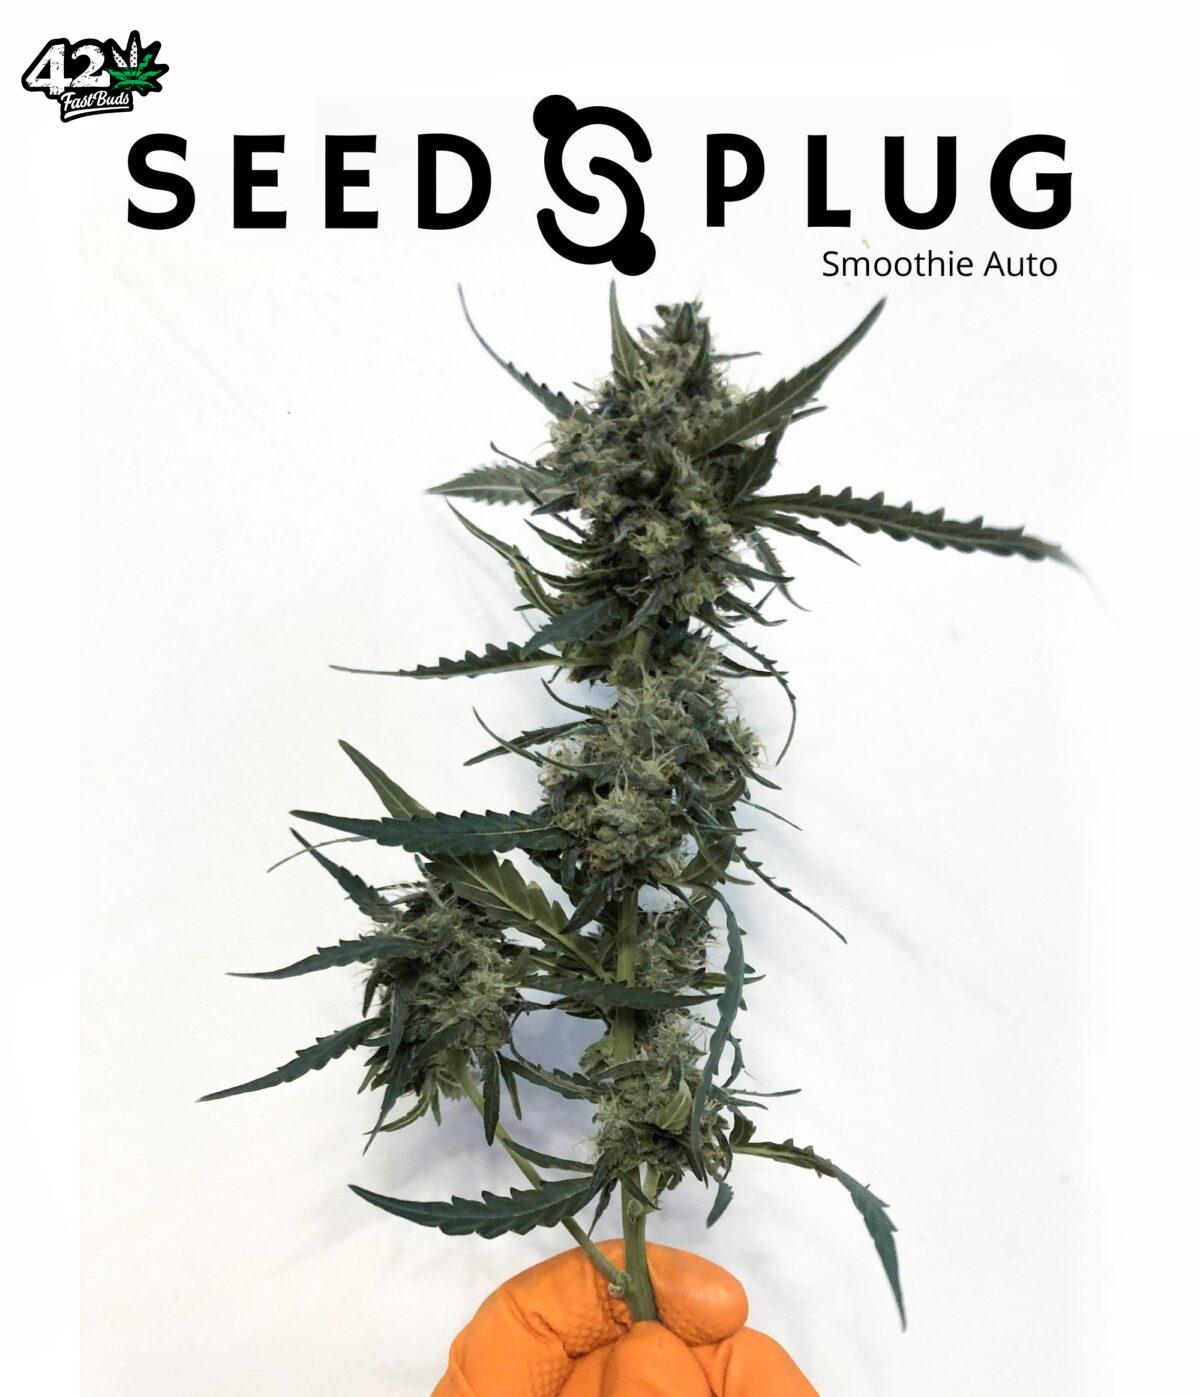 Smoothie Auto | SeedsPlug